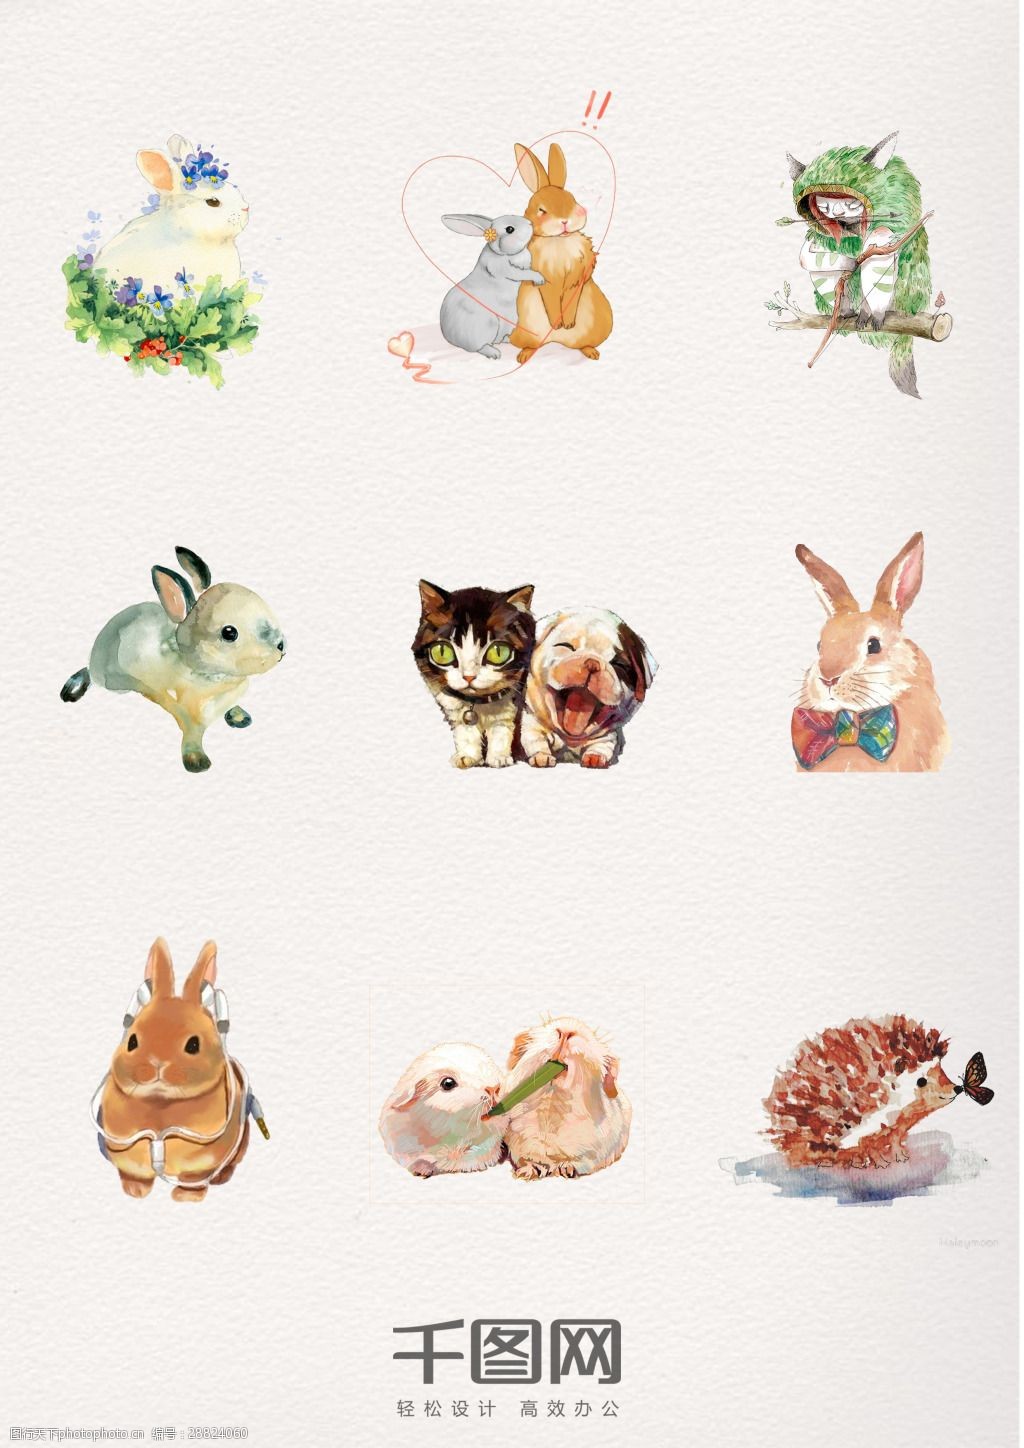 关键词:一组可爱水彩动物设计素材 水彩 手绘 兔子 刺猬 猫 狗 陆地